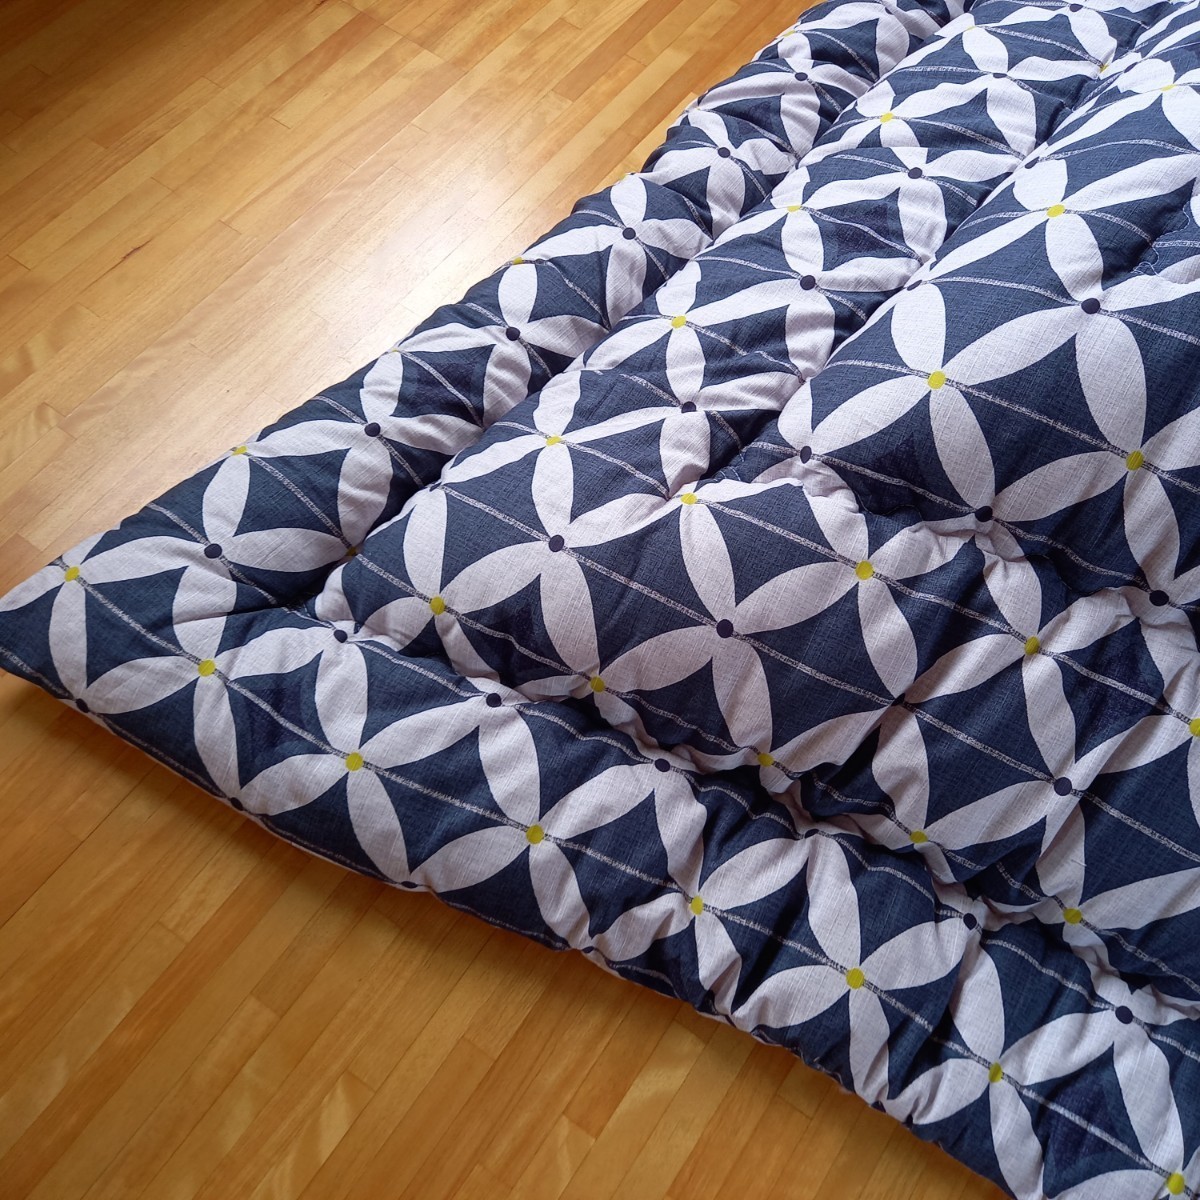  высококлассный котацу futon изменение тканый прямоугольный толщина .. котацу futon объем хлопок 100% автомобиль n язык чистый безопасность сделано в Японии ( пуховый футон ватное одеяло матрац подушка )